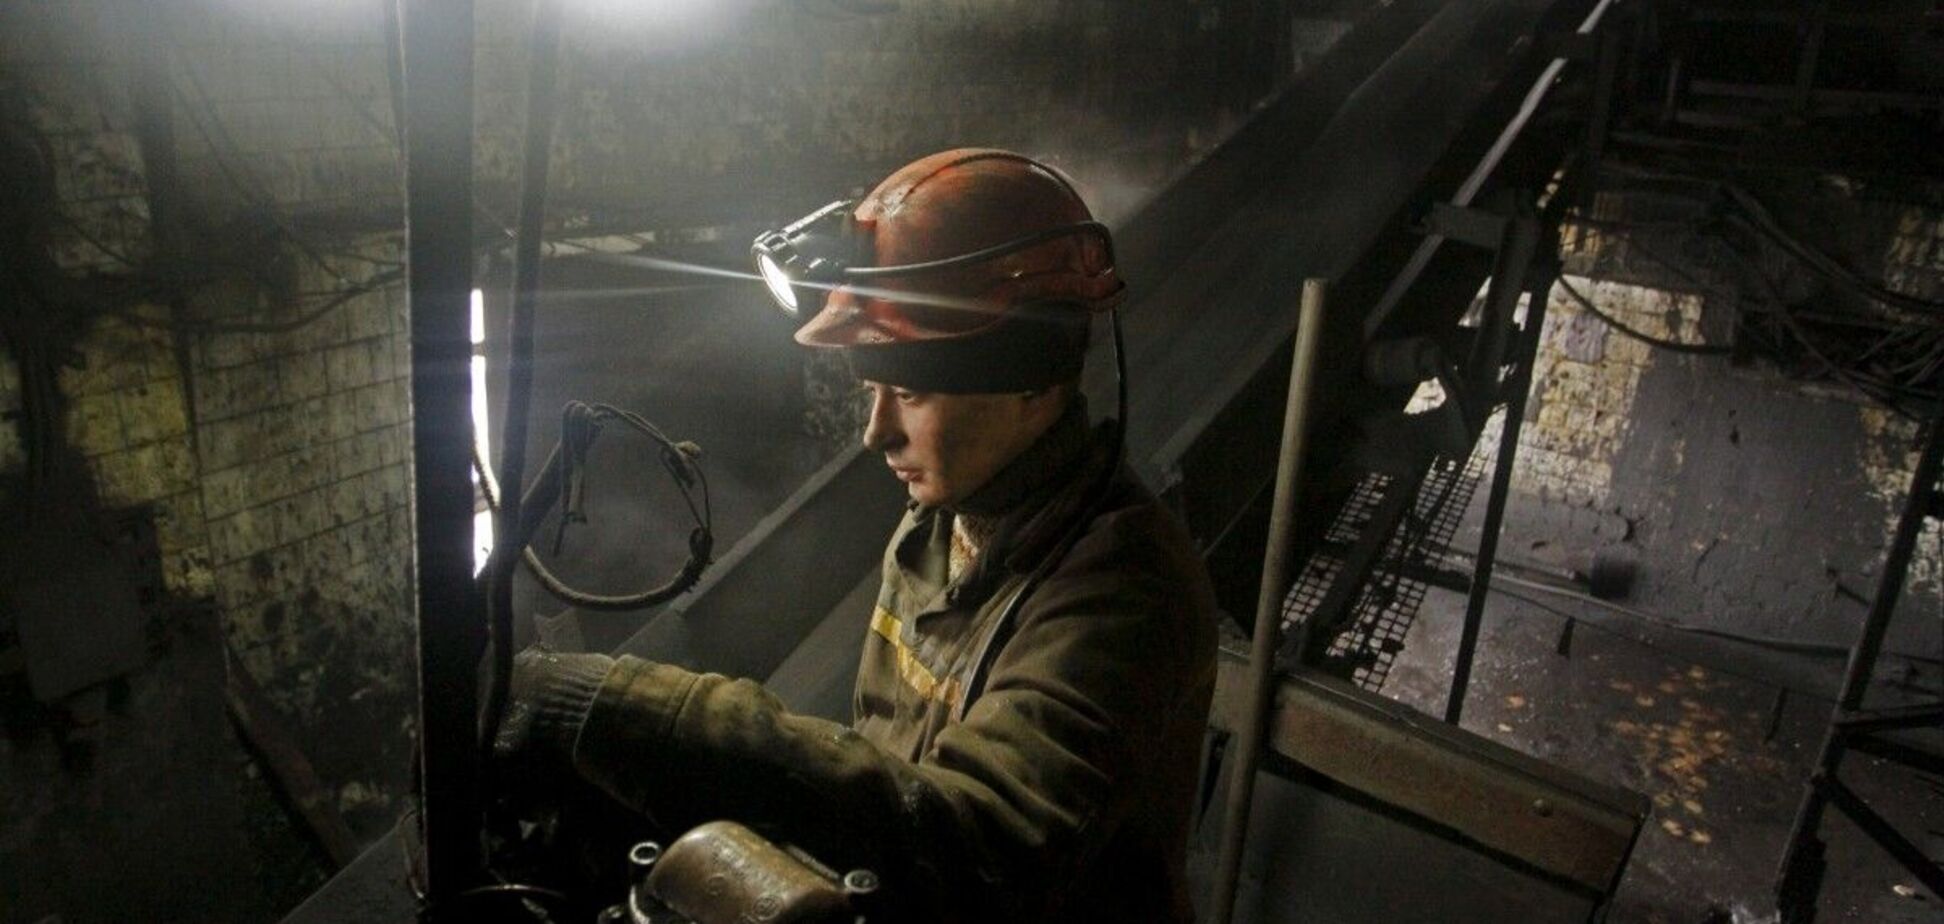 ДТЭК 'Павлоградуголь' планирует добыть более 140 млн т угля до 2030 года